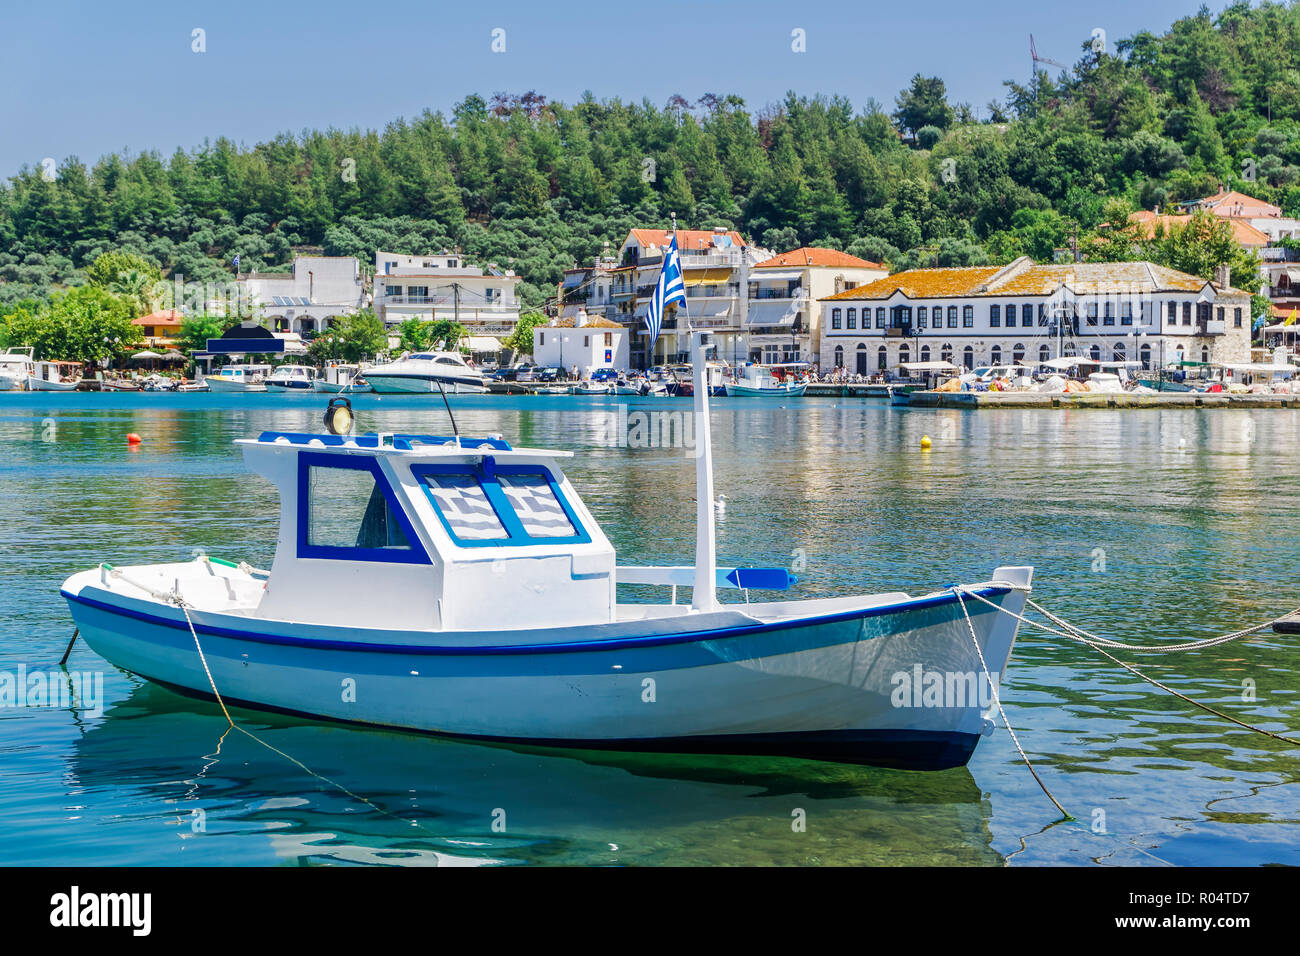 La location petit bateau blanc avec des drapeaux grecs, Limenas, Ville de l'île de Thassos, îles grecques, Grèce, Europe Banque D'Images